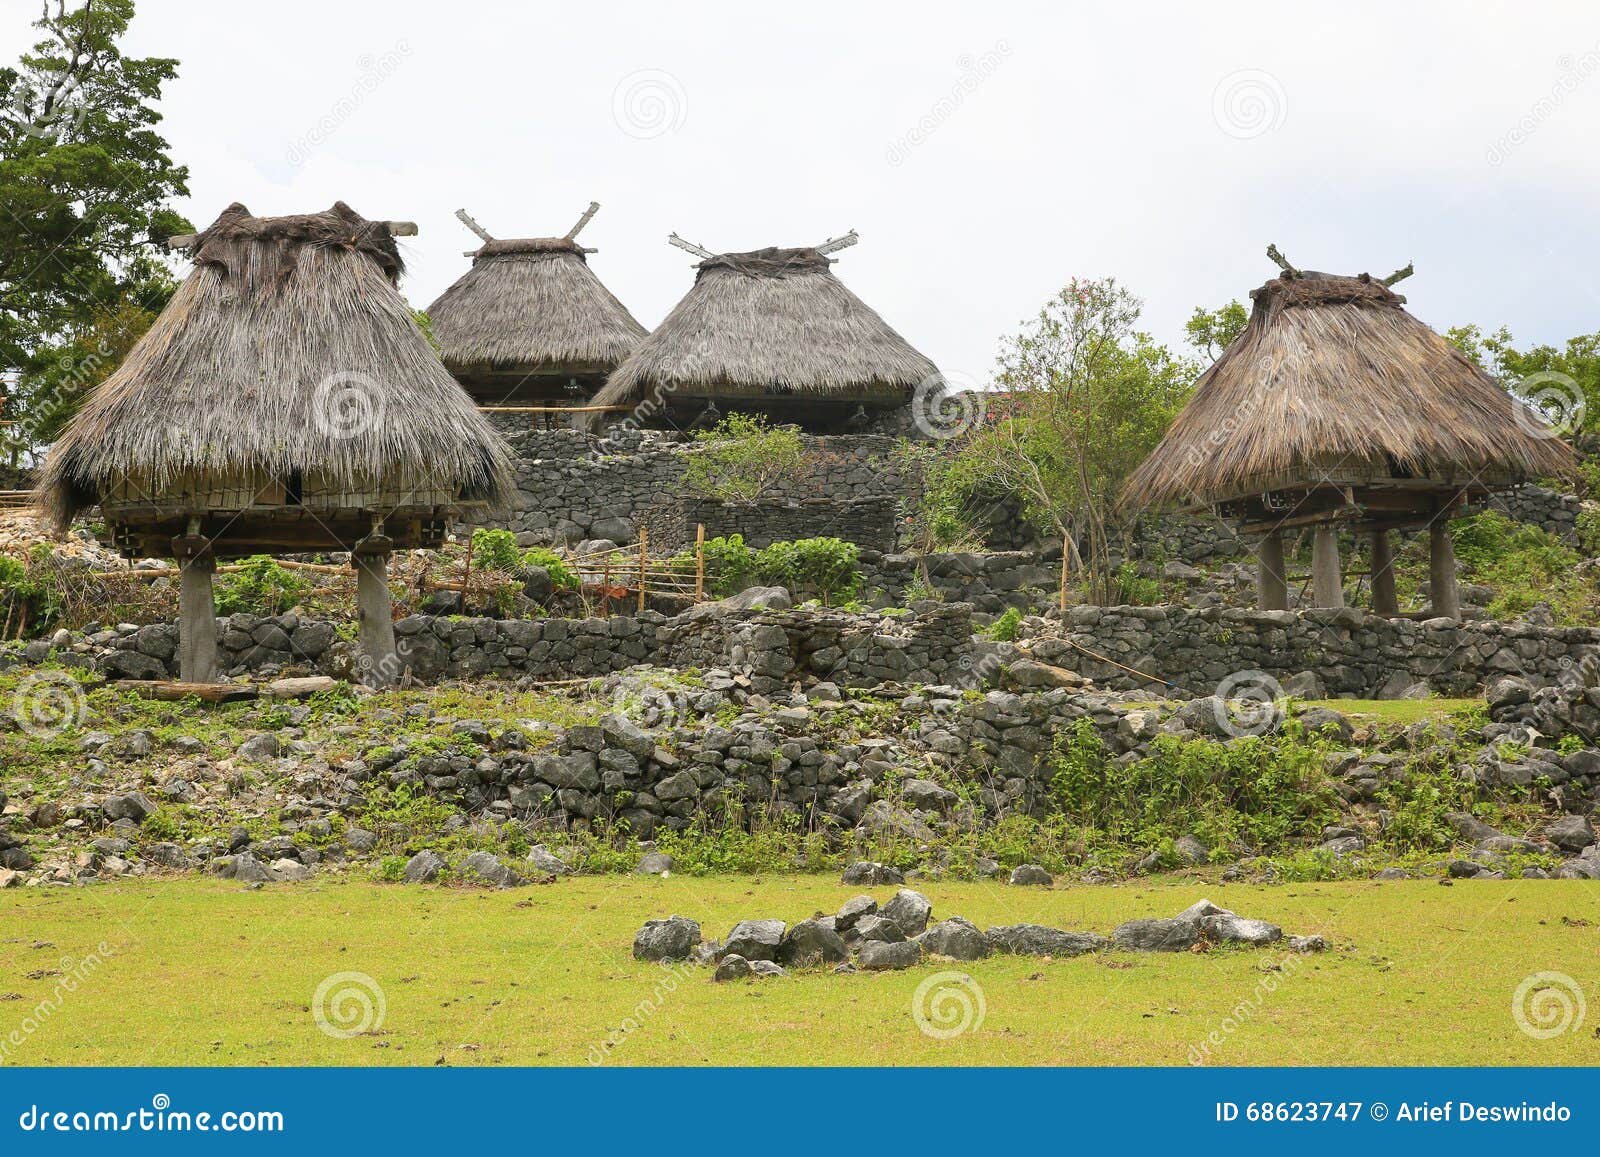 traditional house timor leste